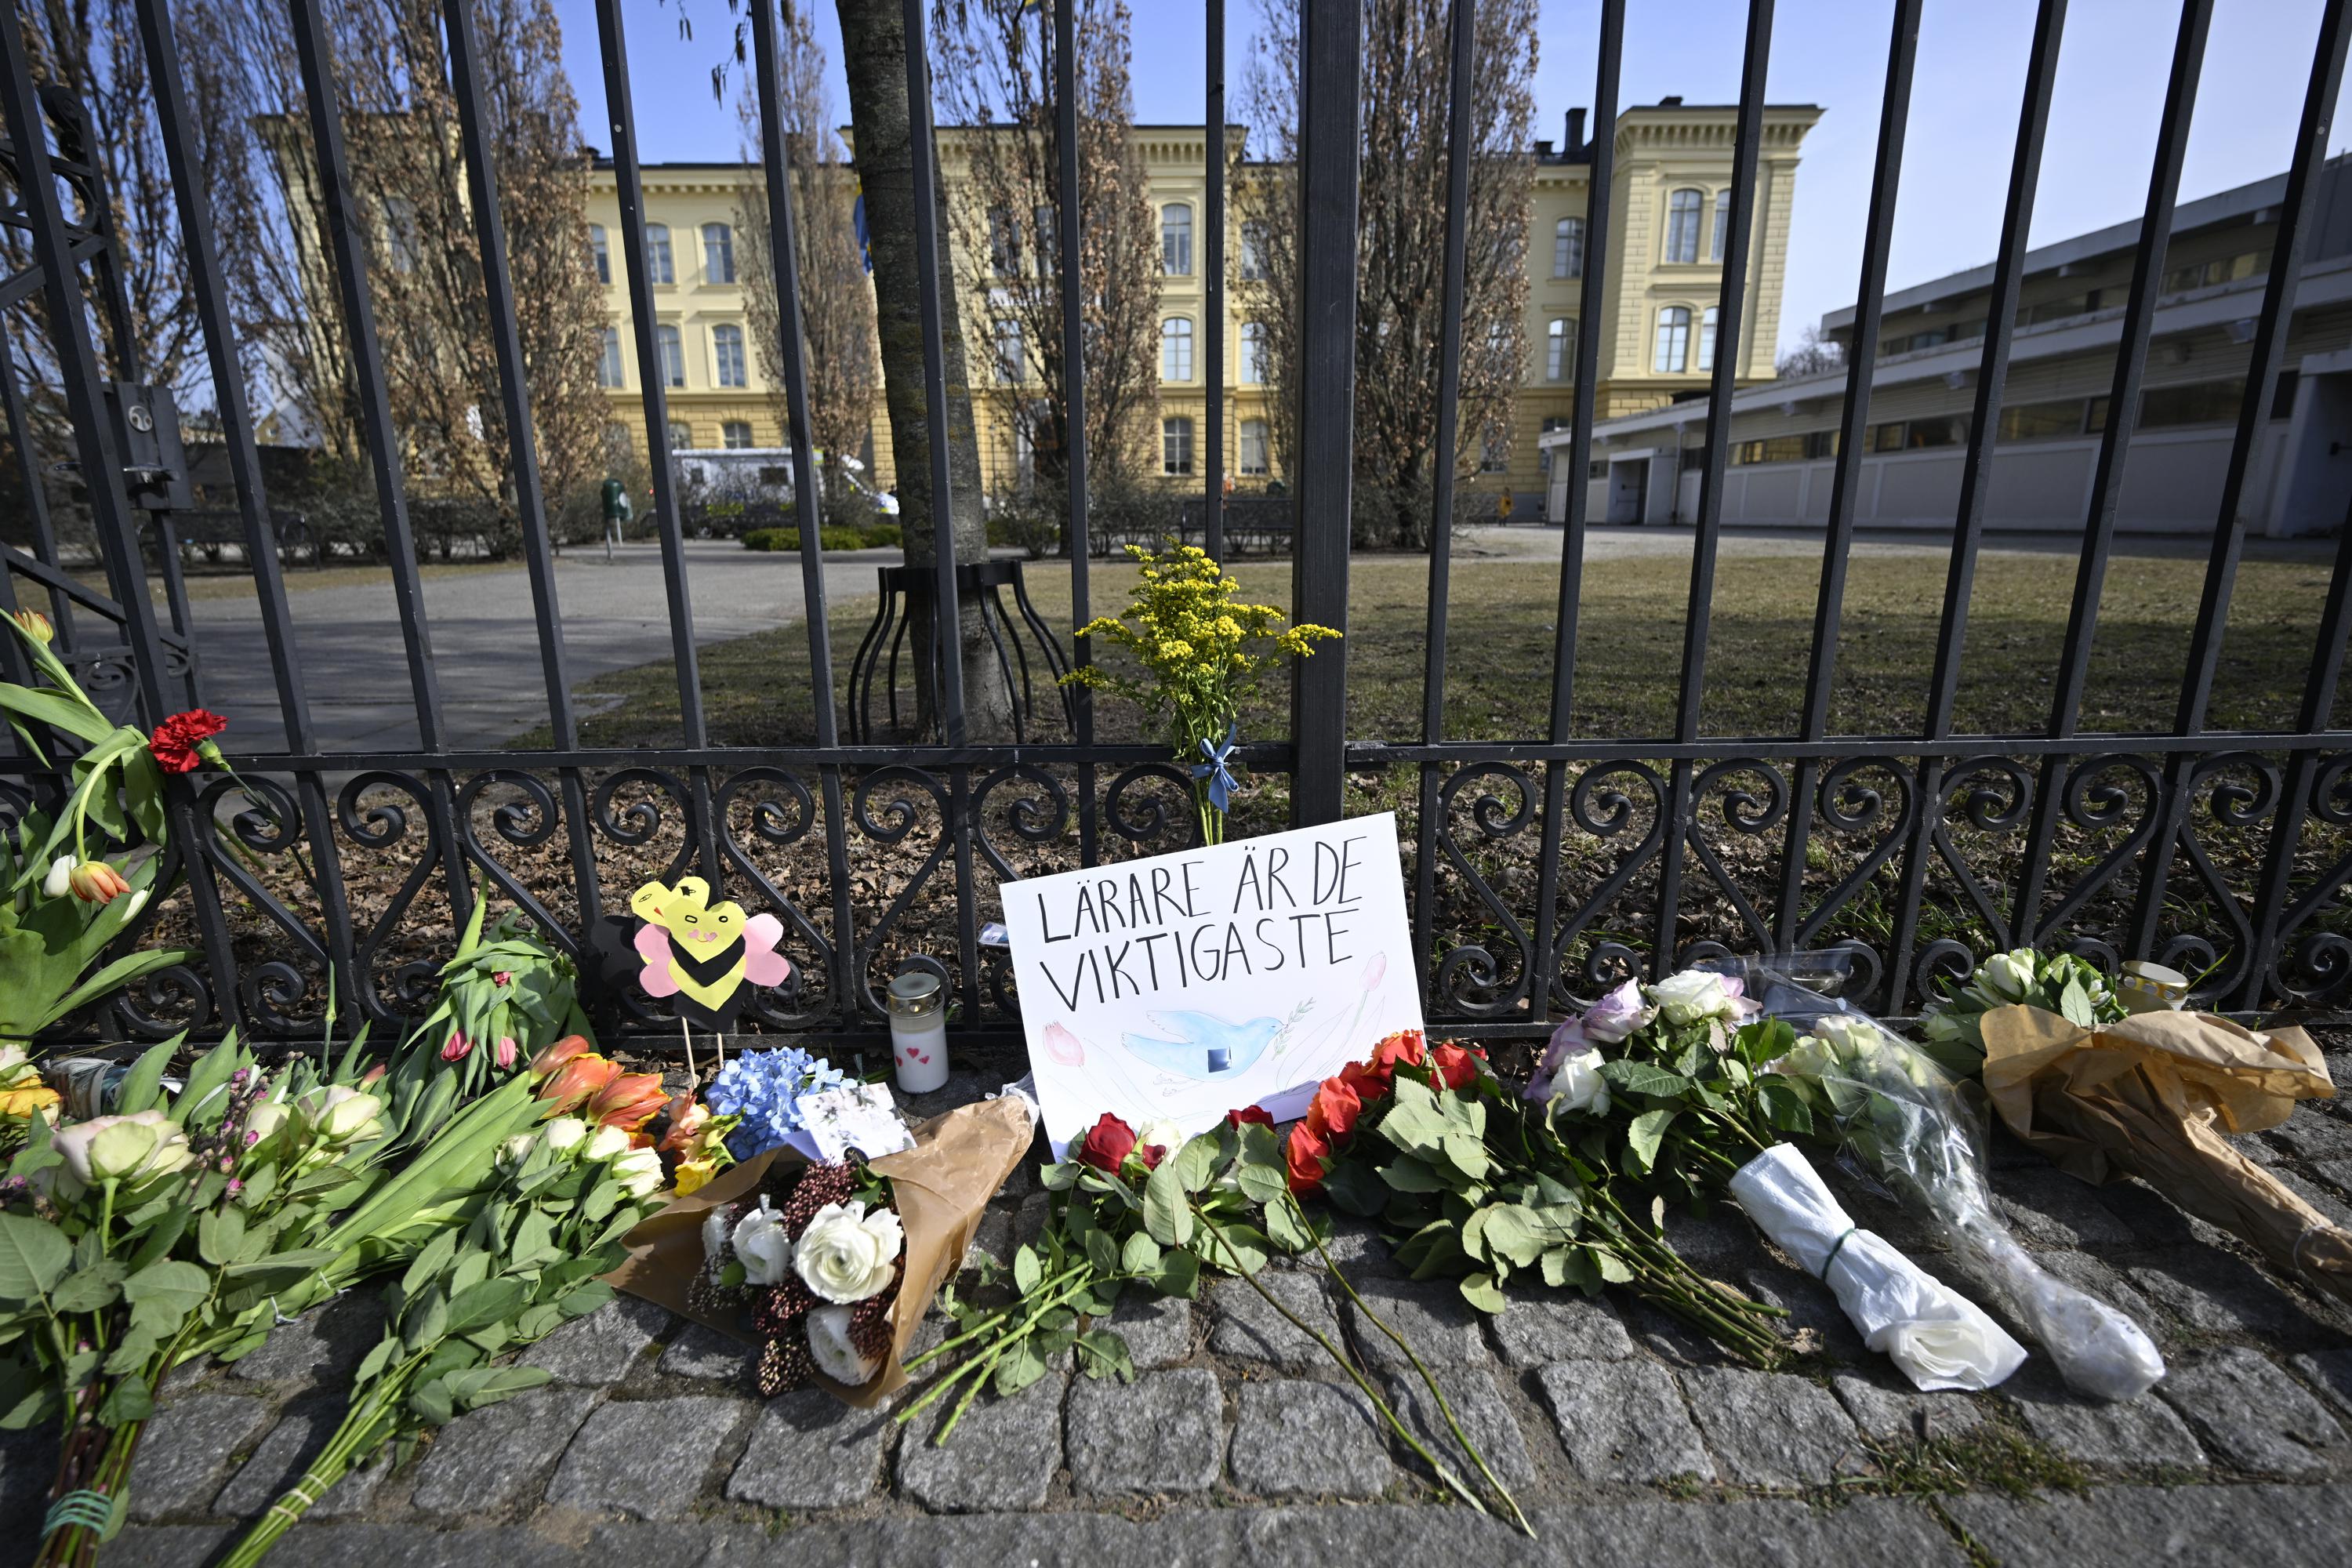 Escuela secundaria sueca 2 maestros asesinados, estudiante arrestado